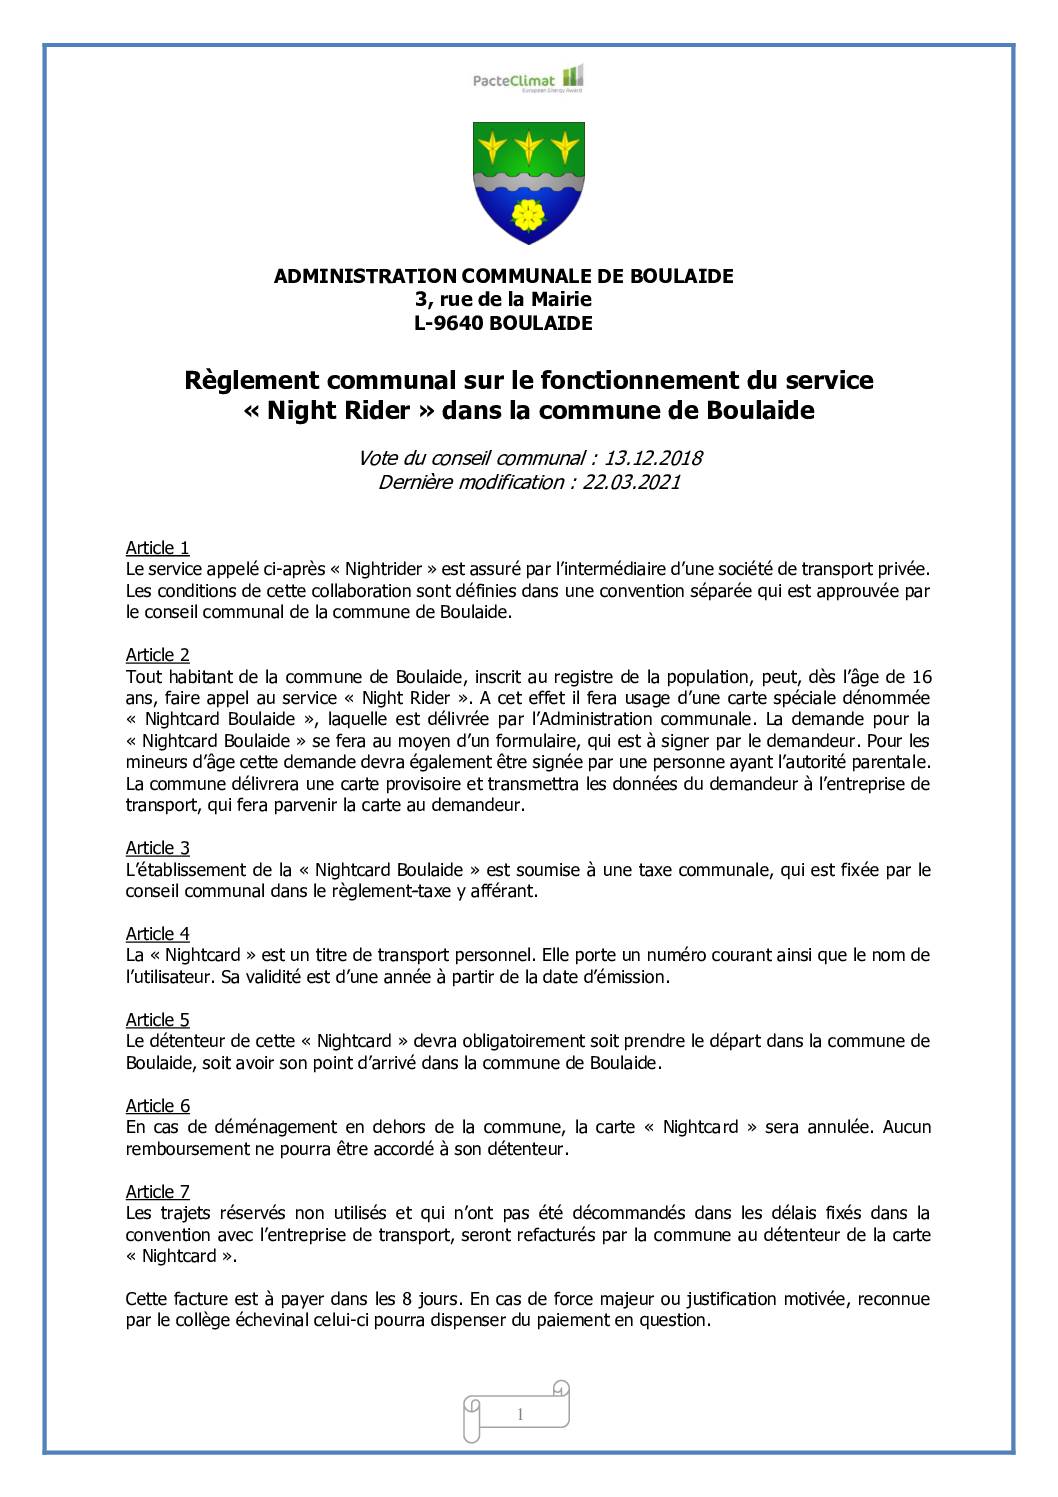 Règlement communal sur le fonctionnement du service « Night Rider » dans la commune de Boulaide du 22.03.2021